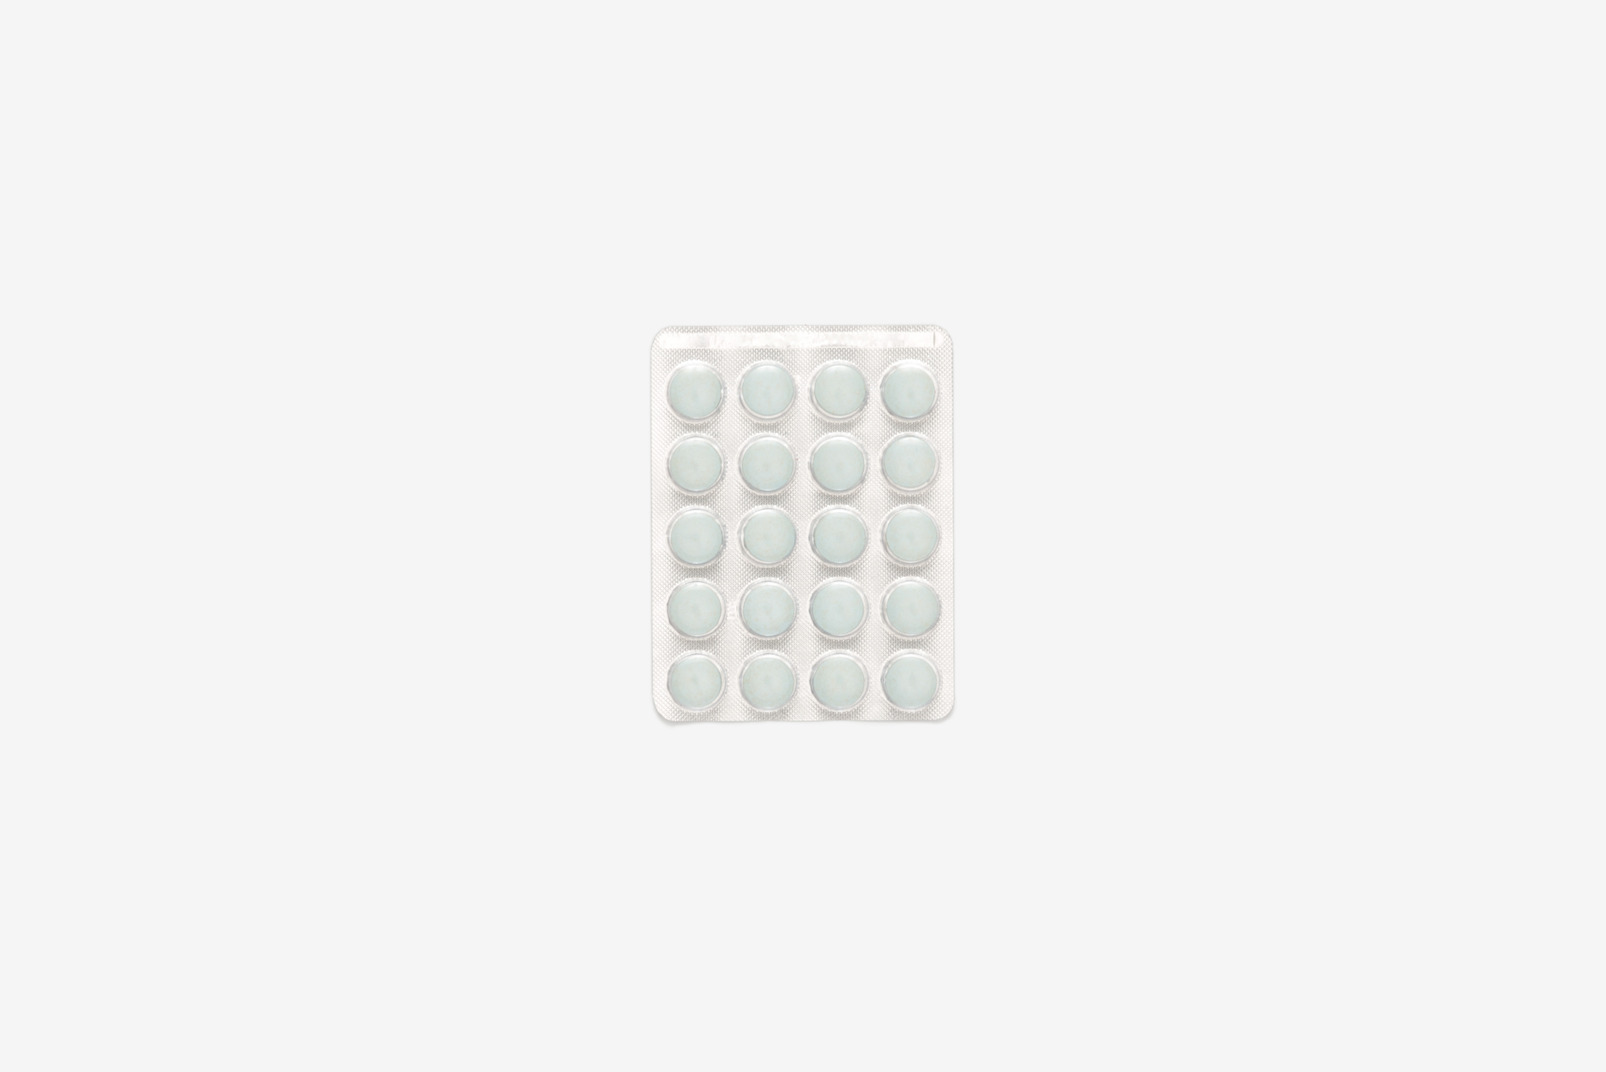 Blister pack of white pills